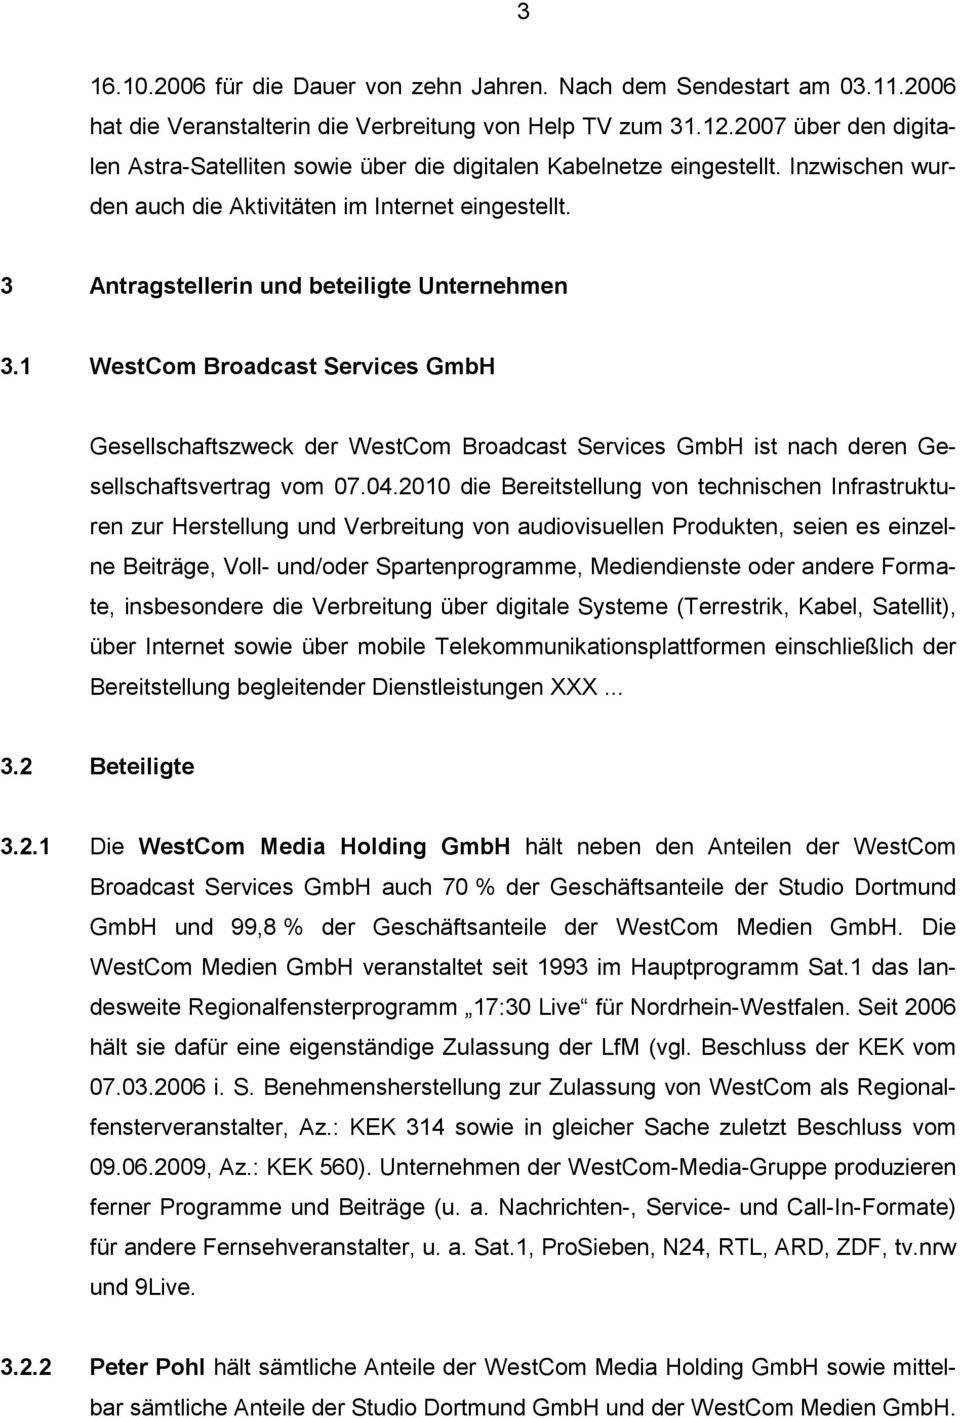 3 Antragstellerin und beteiligte Unternehmen 3.1 WestCom Broadcast Services GmbH Gesellschaftszweck der WestCom Broadcast Services GmbH ist nach deren Gesellschaftsvertrag vom 07.04.